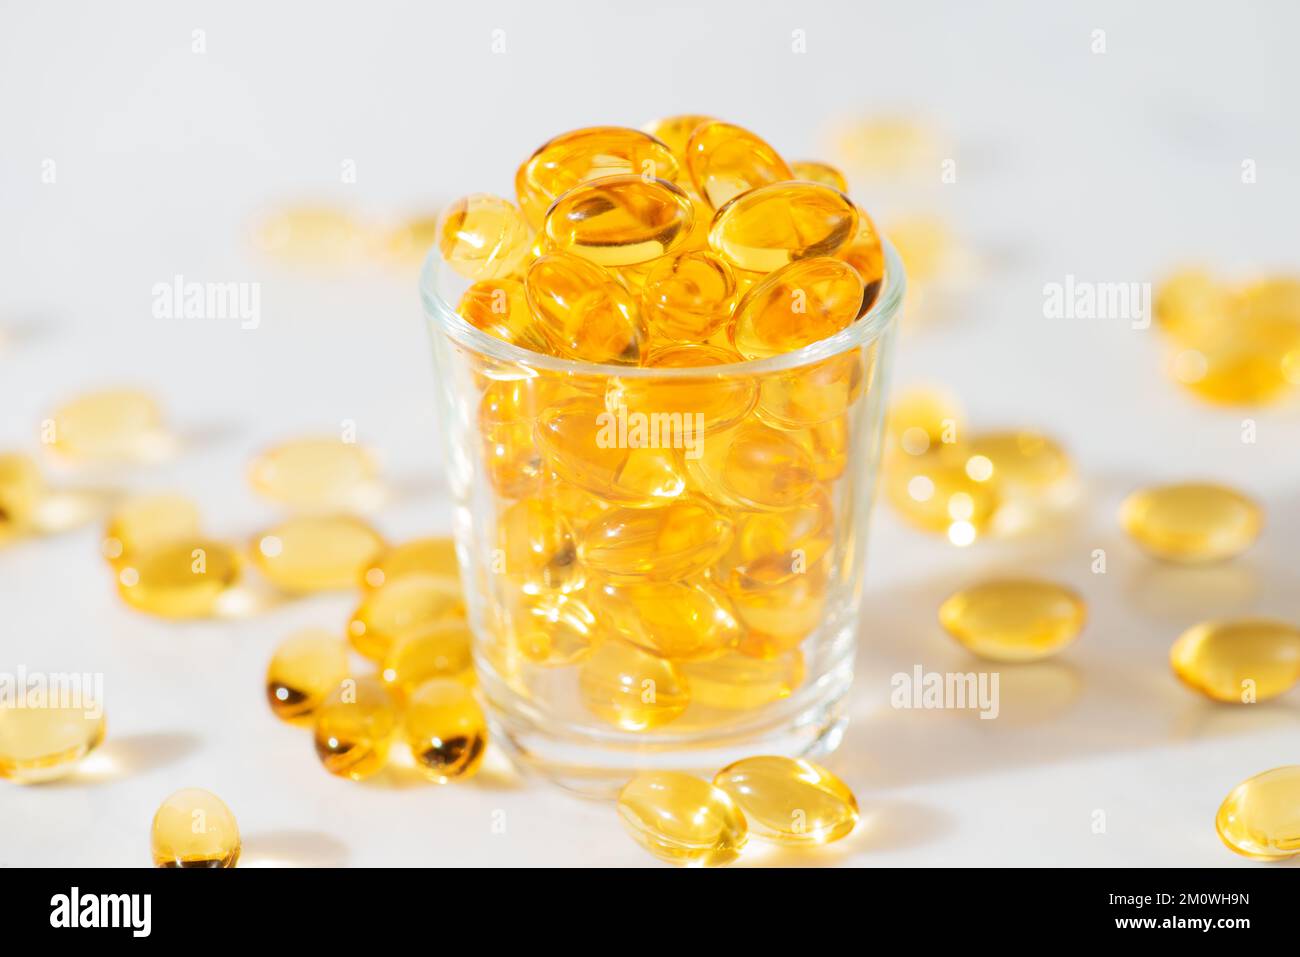 Fischöl Omega 3 Pillen Kapseln in einer Glasflasche auf weißem Marmorhintergrund, gesunde Ernährung, Nahrungsergänzungsmittel, Vitamine D. Stockfoto